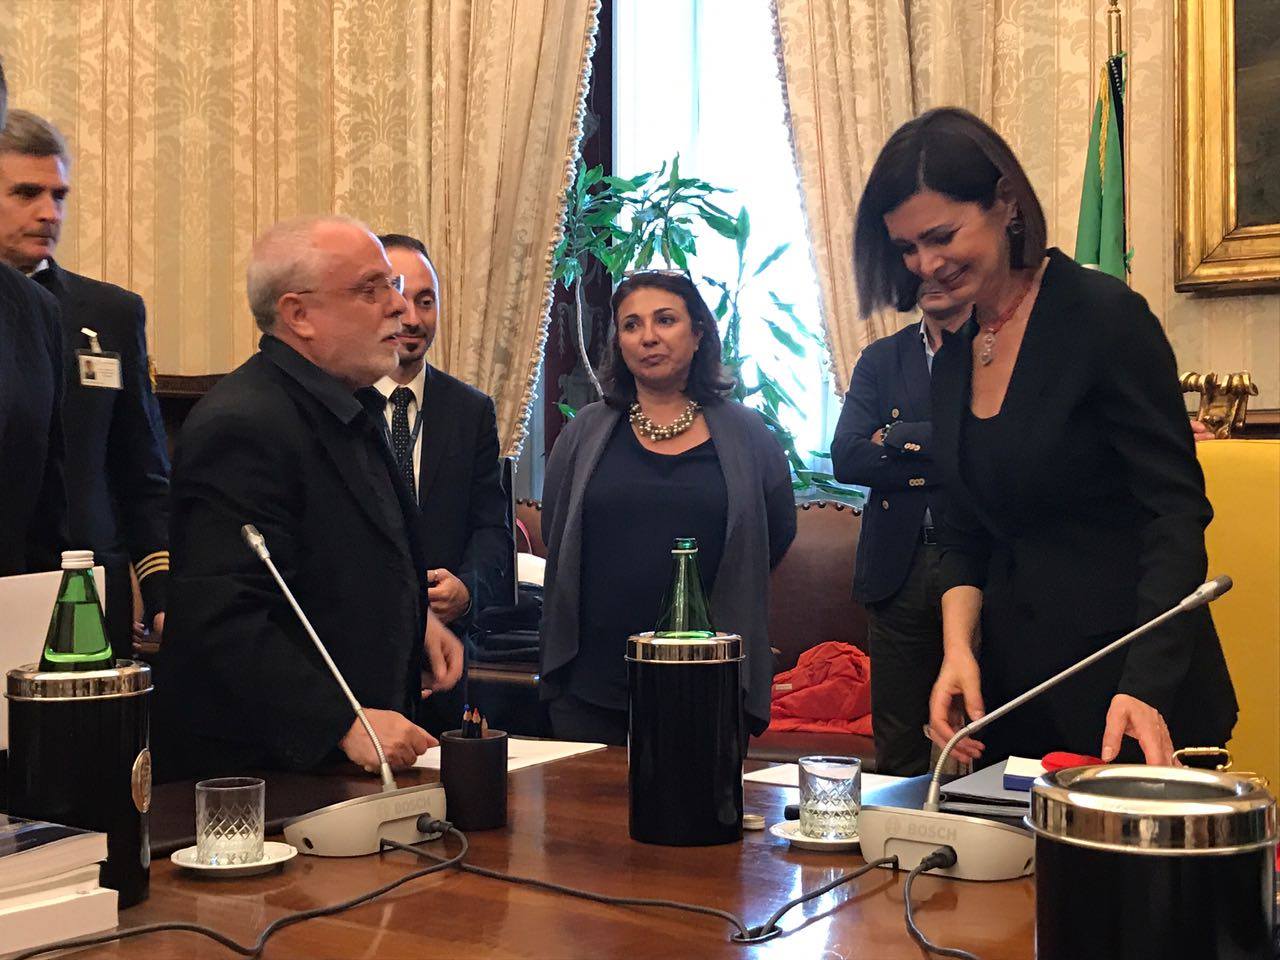 Martino Salvatore e Laura Boldrini (presidente della Camera dei deputati)